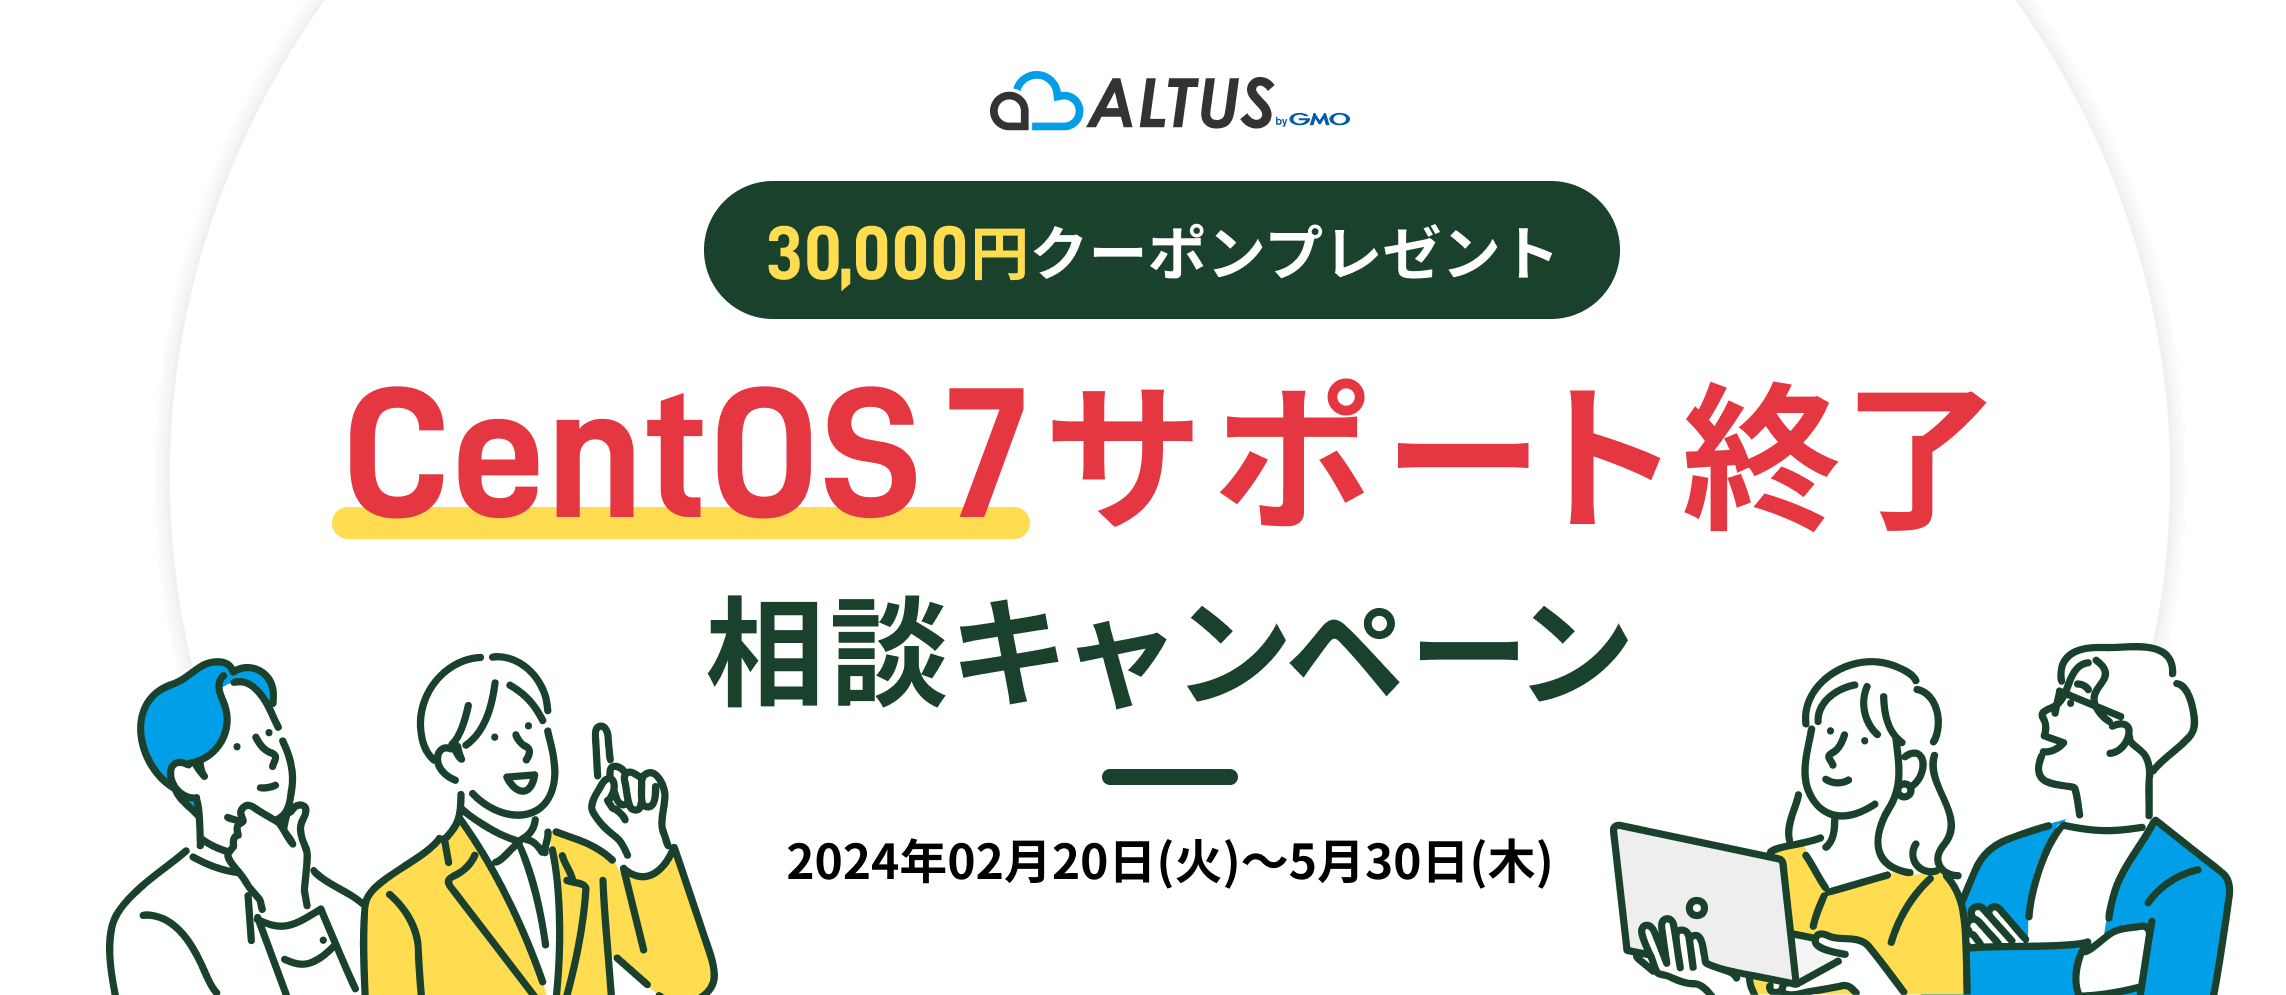 ALTUS 3万円オフ！CentOS 7サポート終了相談キャンペーン